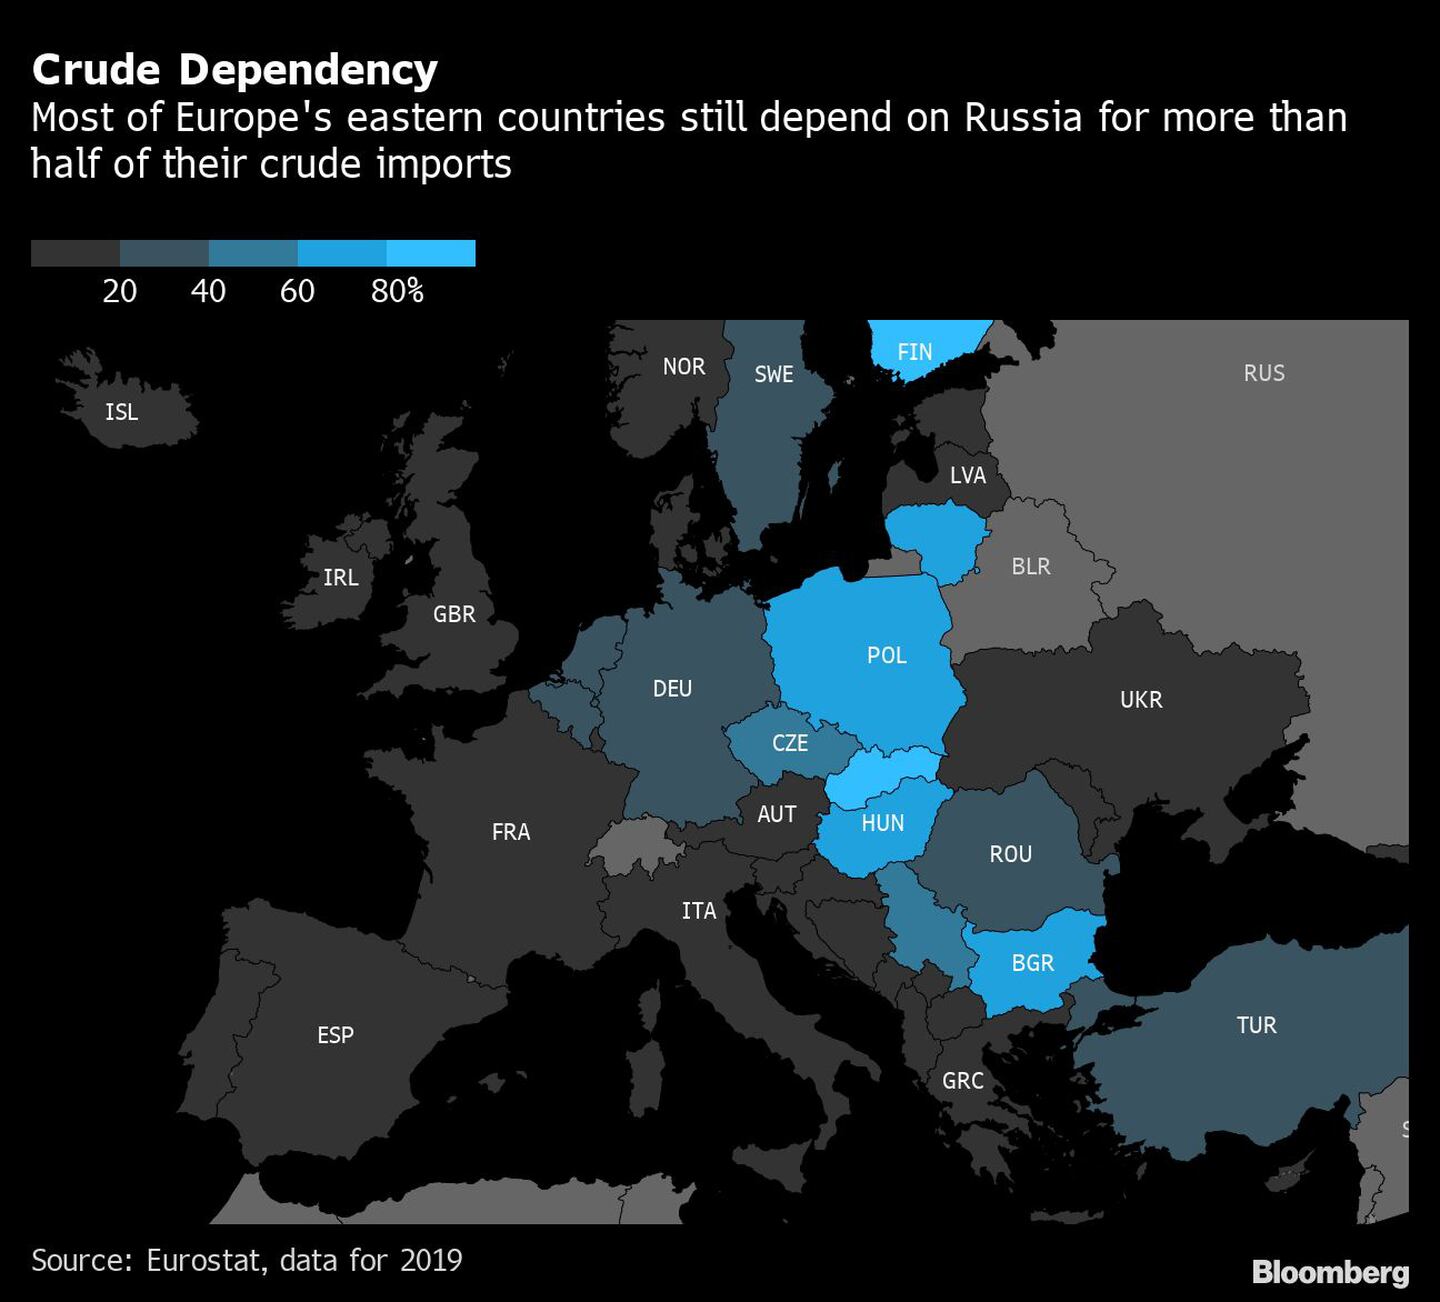 Dependencia de crudo. La mayoría de los países de Europa del este todavía dependen de Rusia para más de la mitad de sus importaciones de crudo. dfd